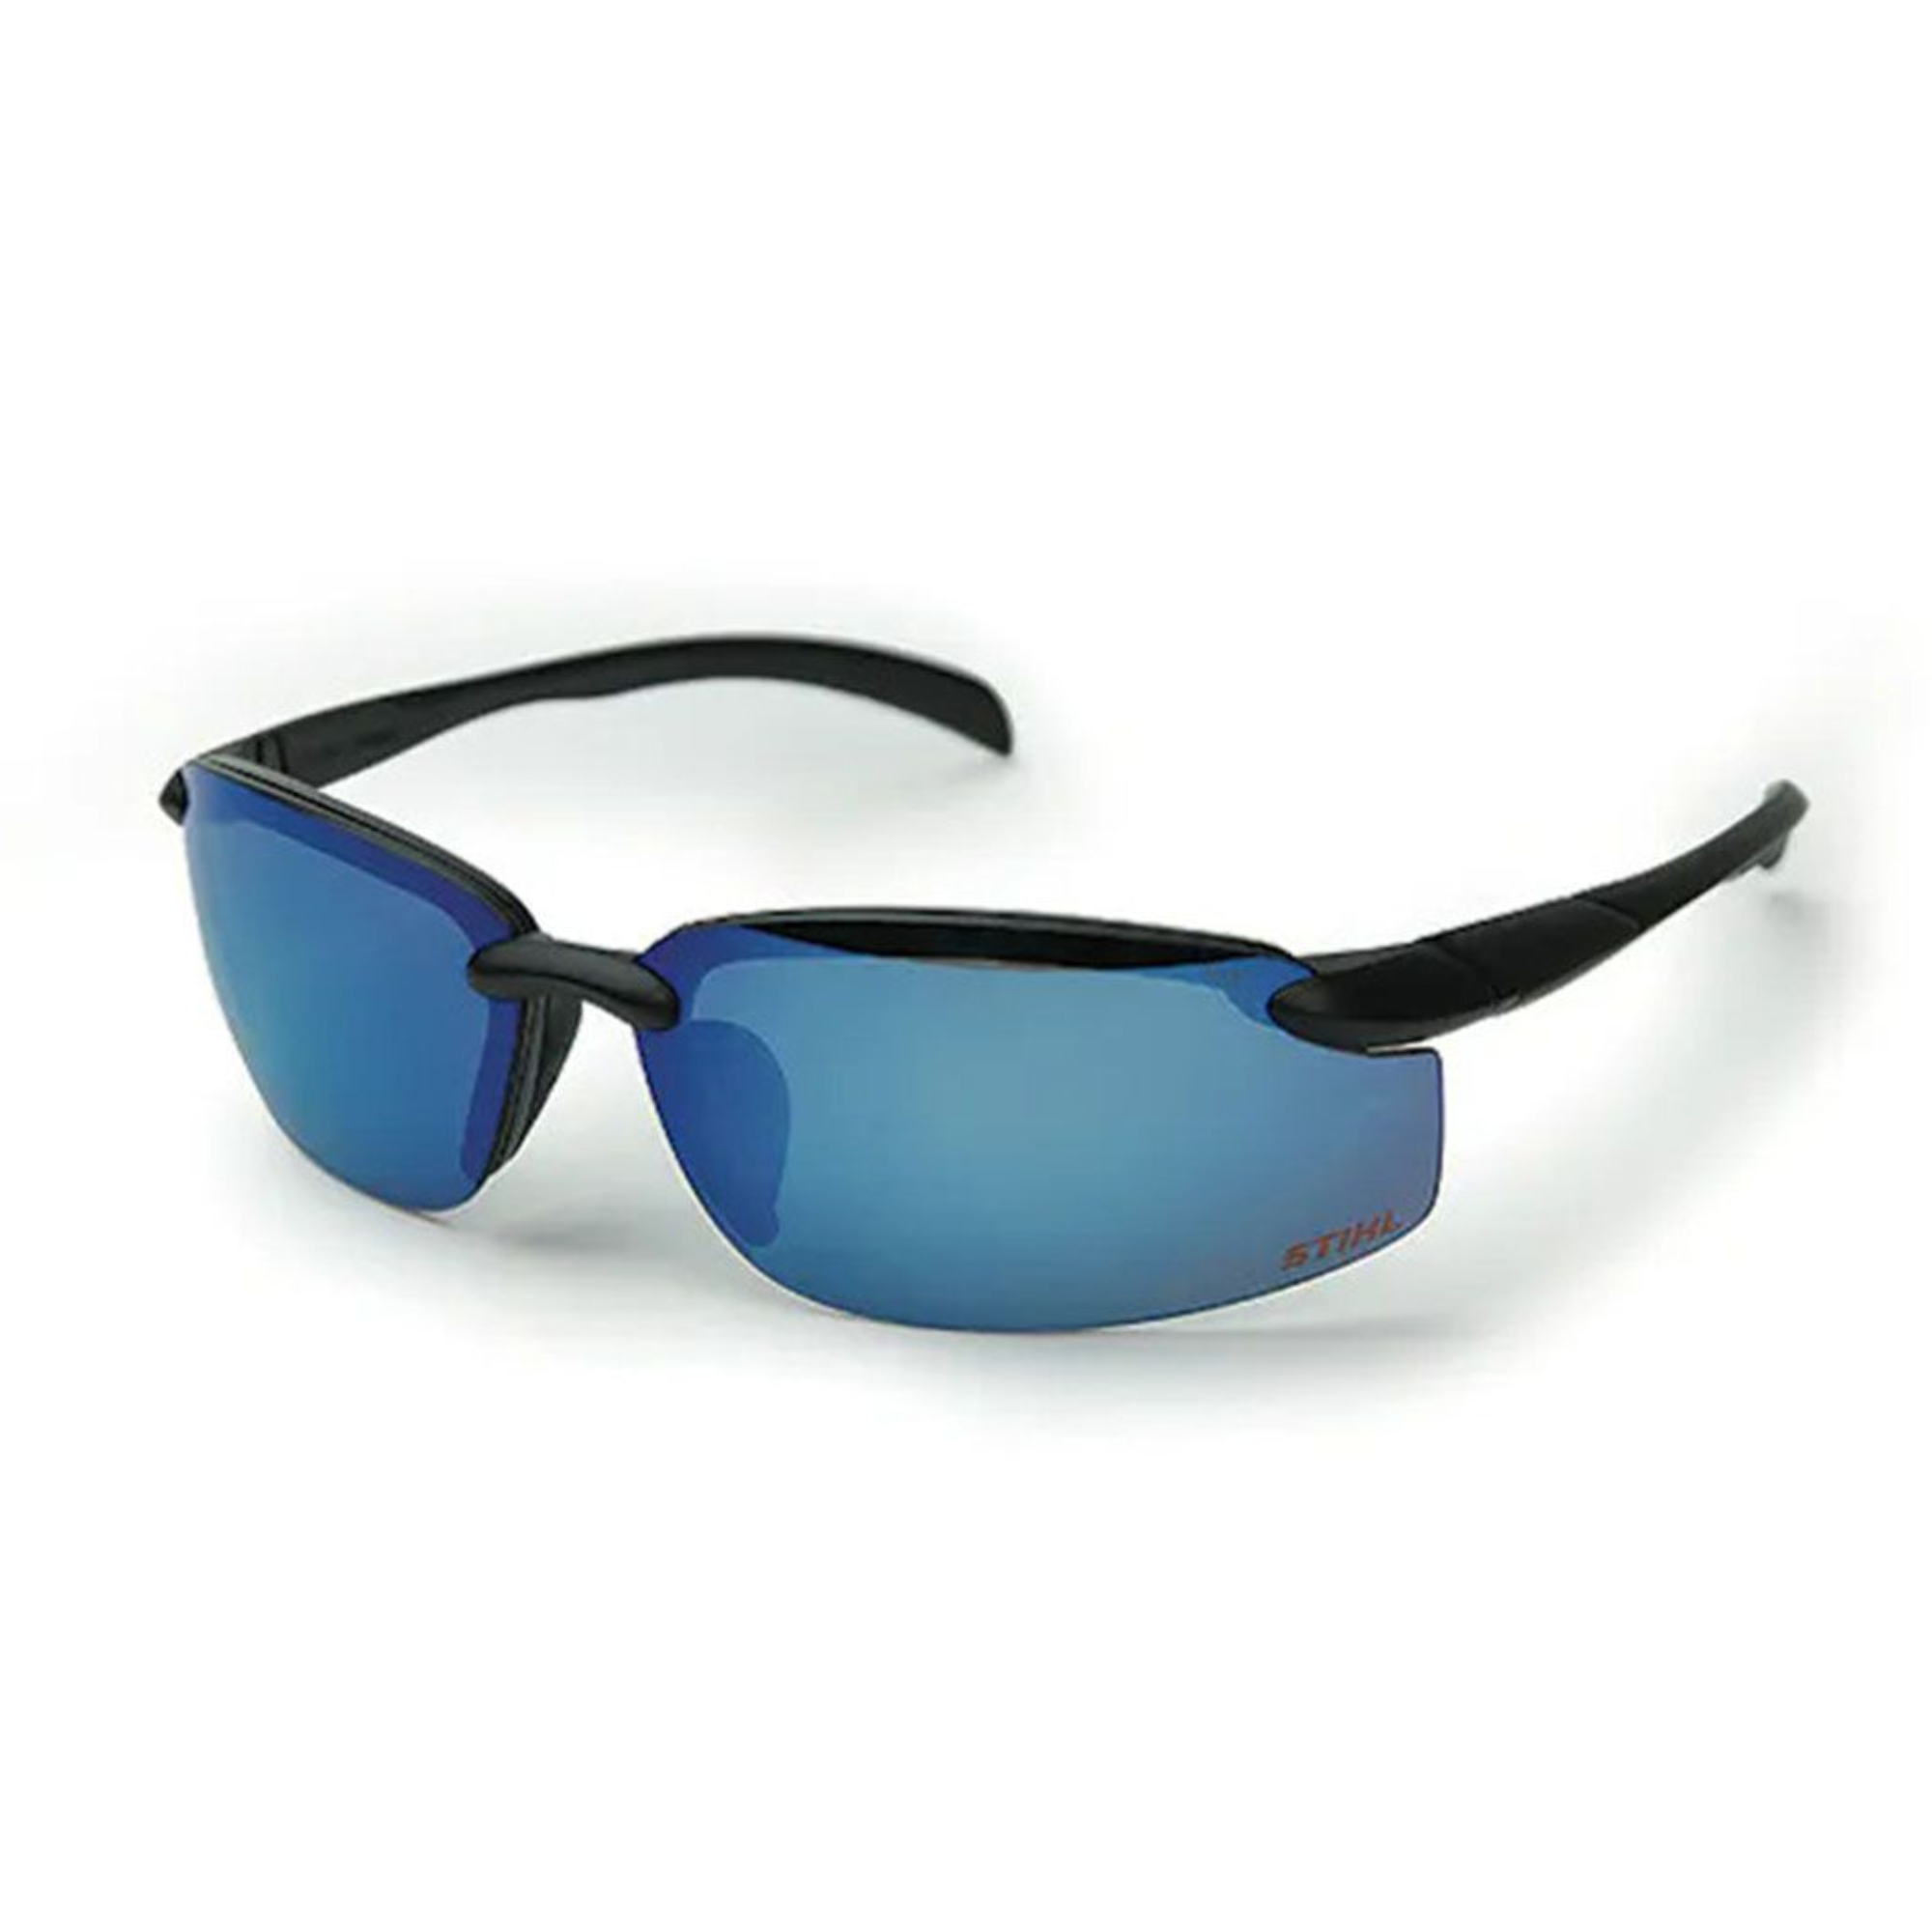 Stihl Deputy Safety Glasses | Blue Mirror Lens | 7010 884 0375